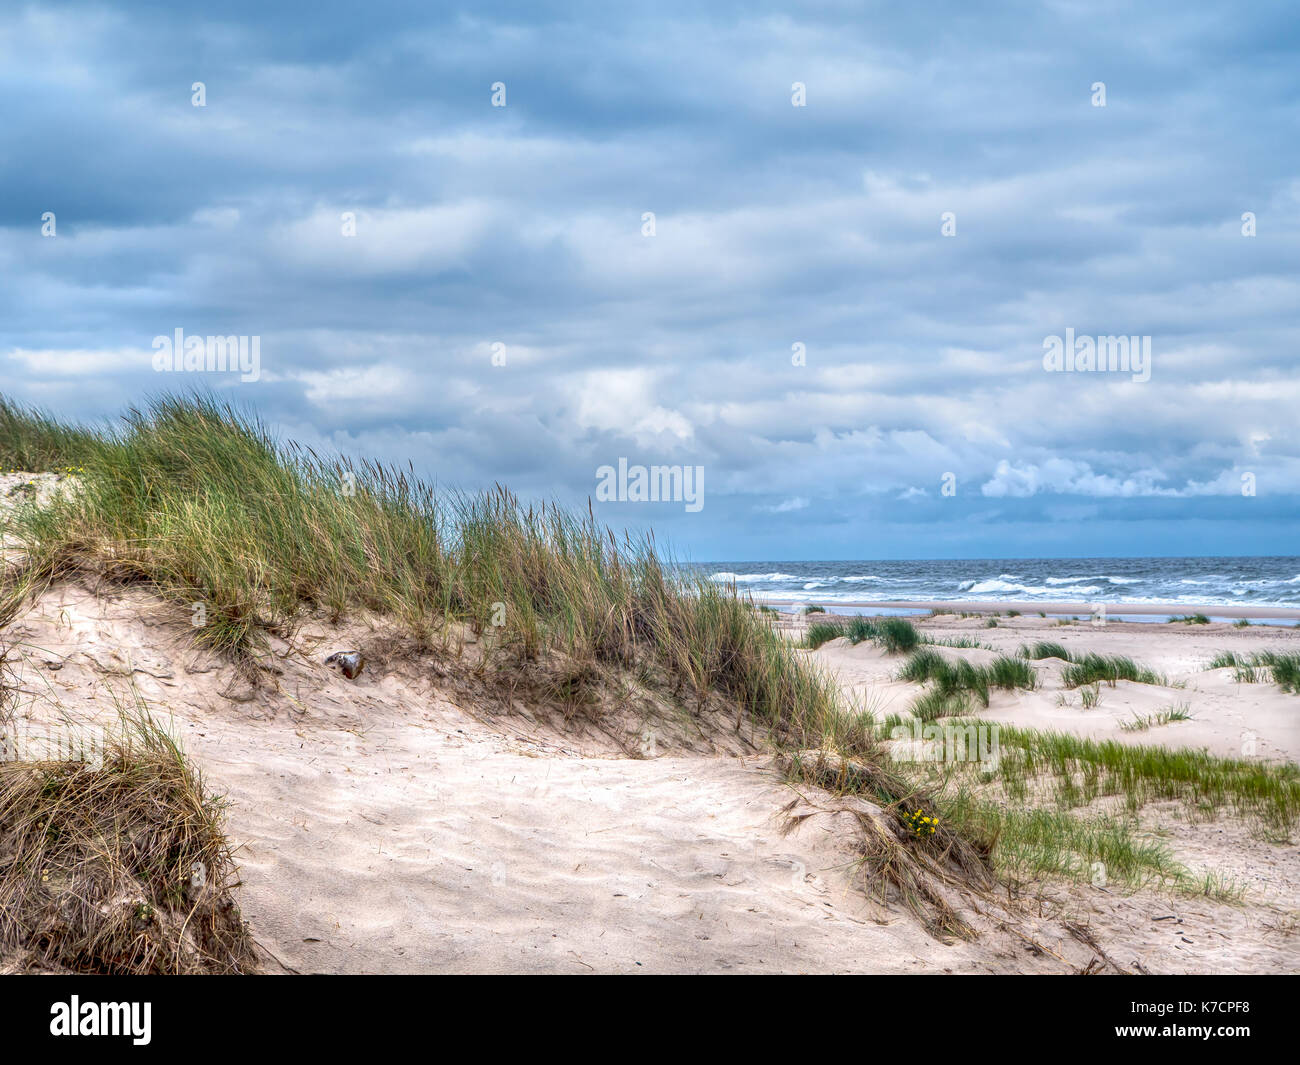 Coastal Sand dune, auf dem Weg zur bewegten dune Wydma Czolpinska im Slowinski-nationalpark zwischen Rowy und Leba, Ostsee, Polen Stockfoto